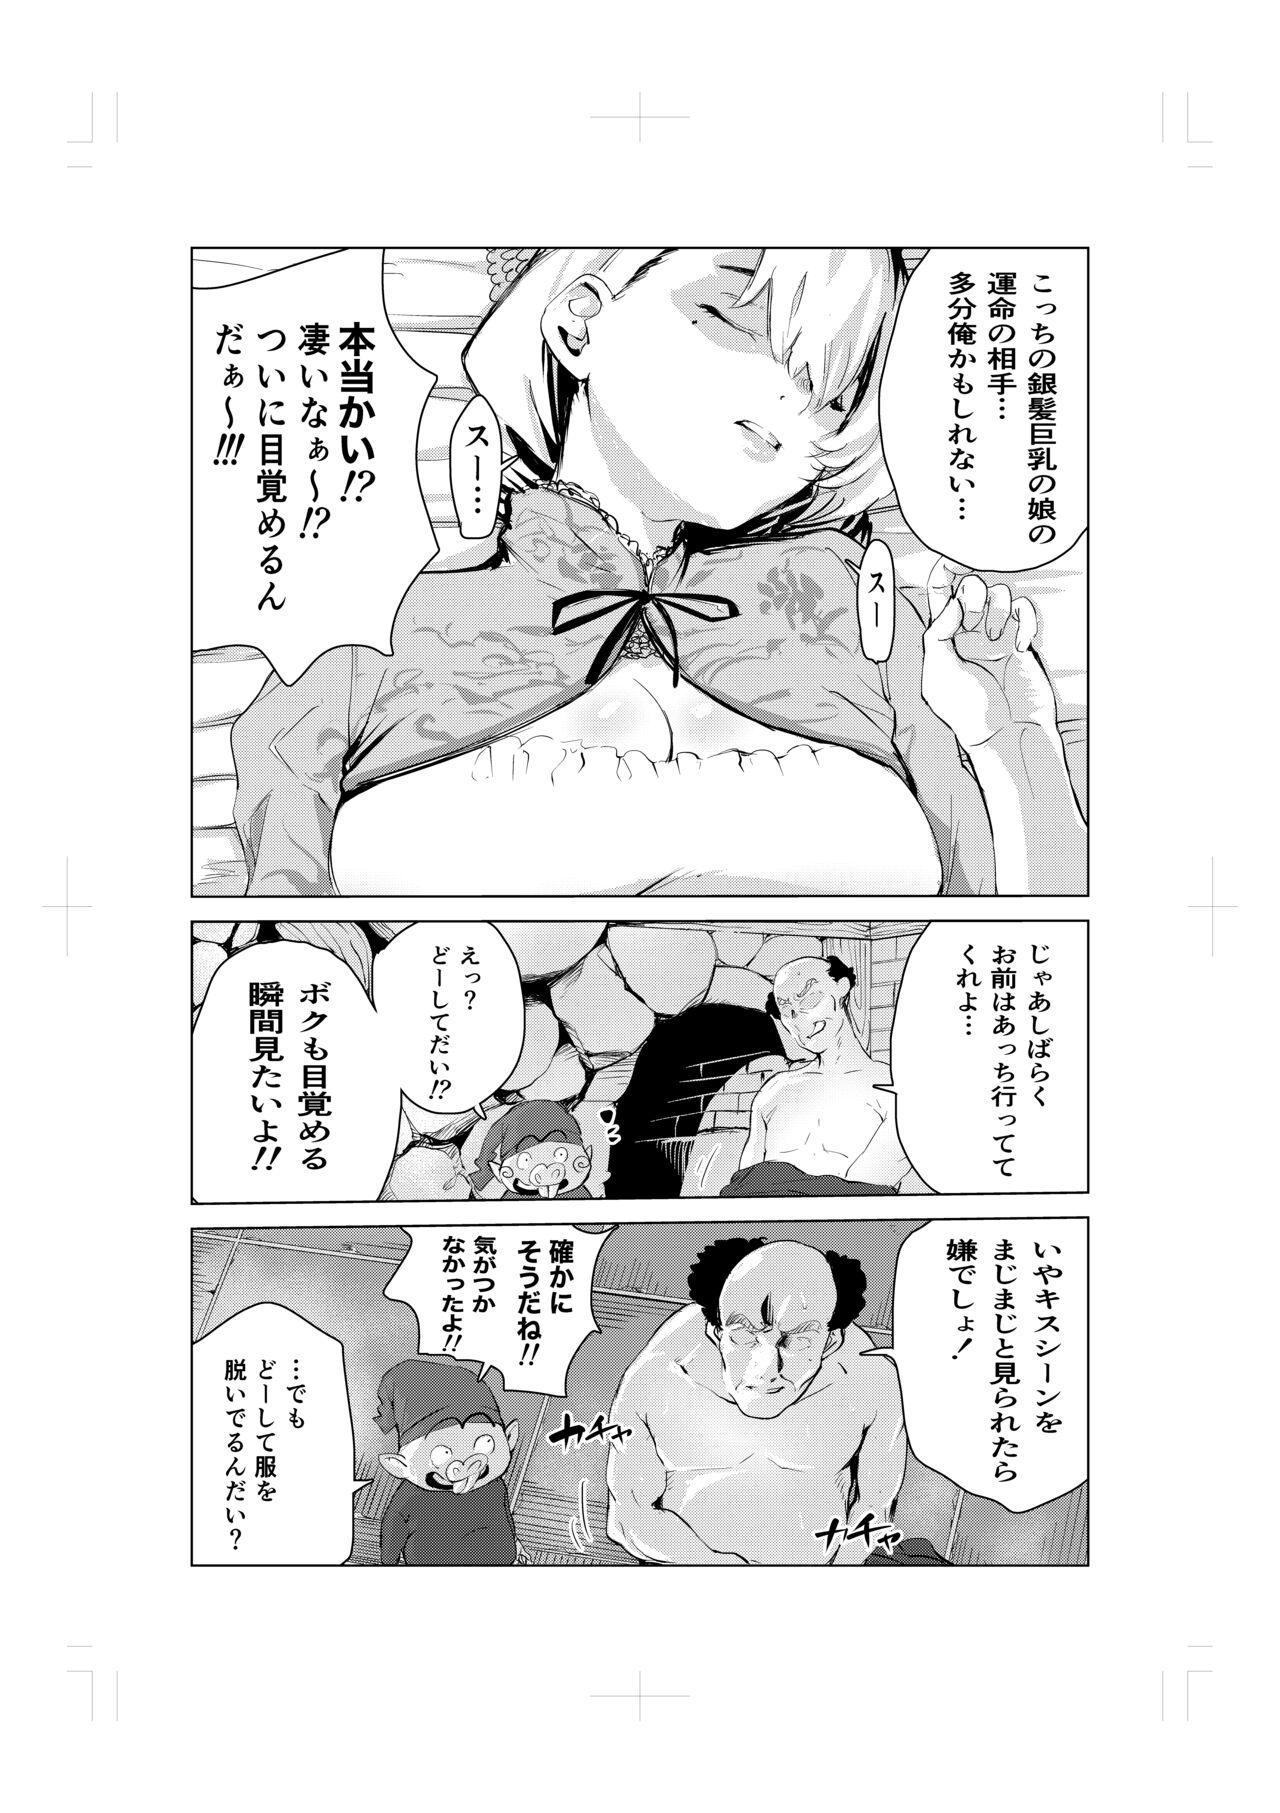 Strapon Nemuri hime no ketsu ana ne bakku monogatari - Original Pierced - Page 8